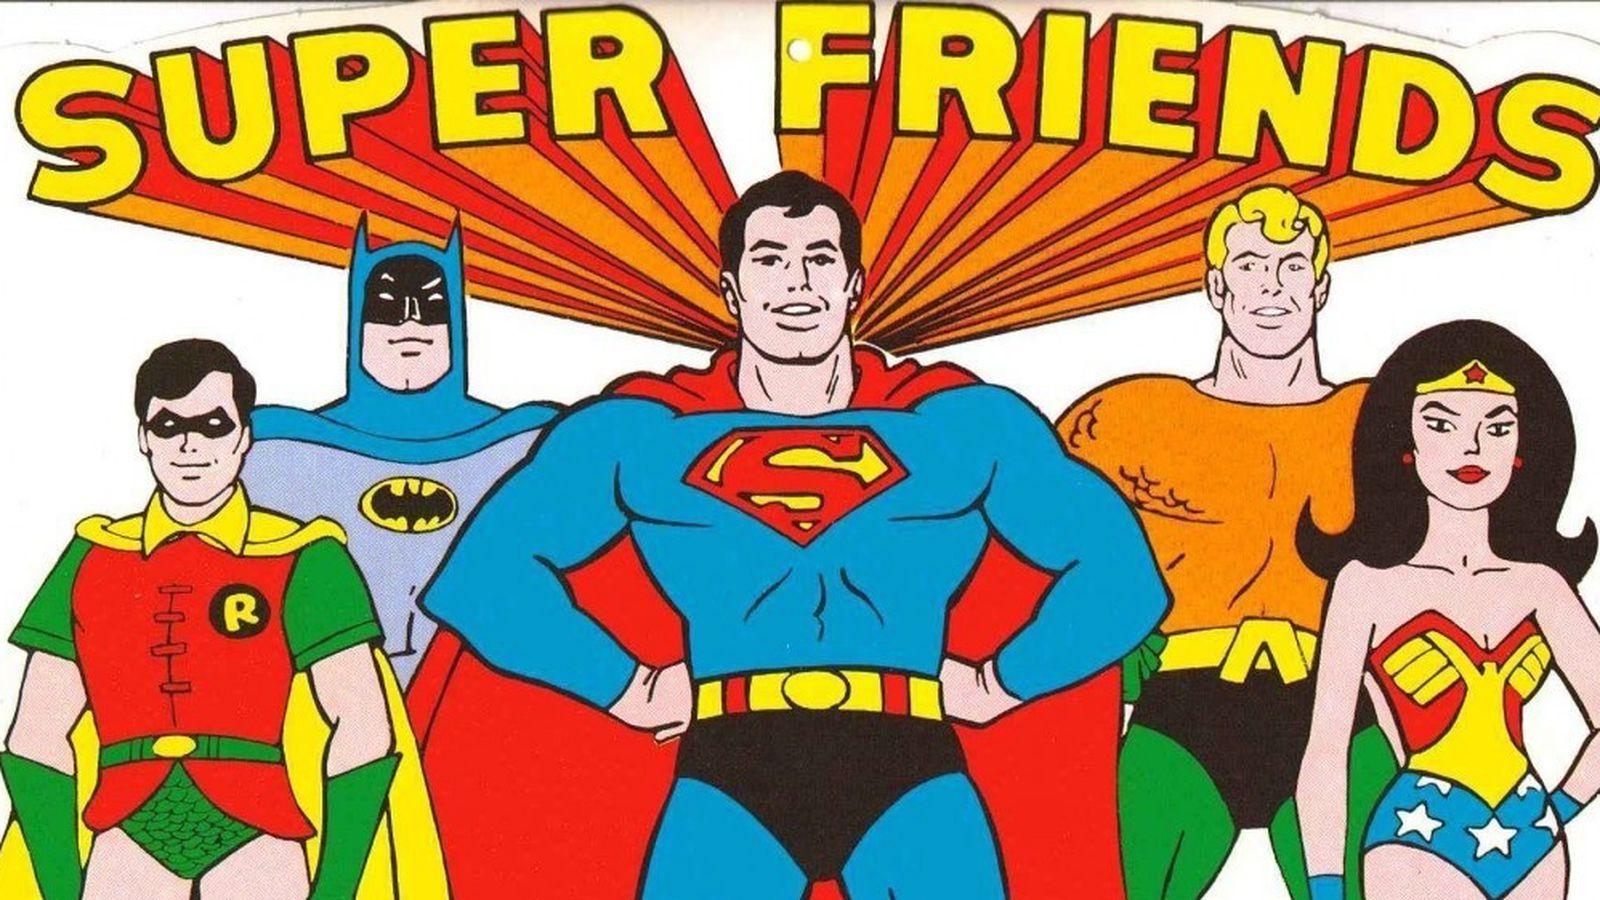 Super Friends #23